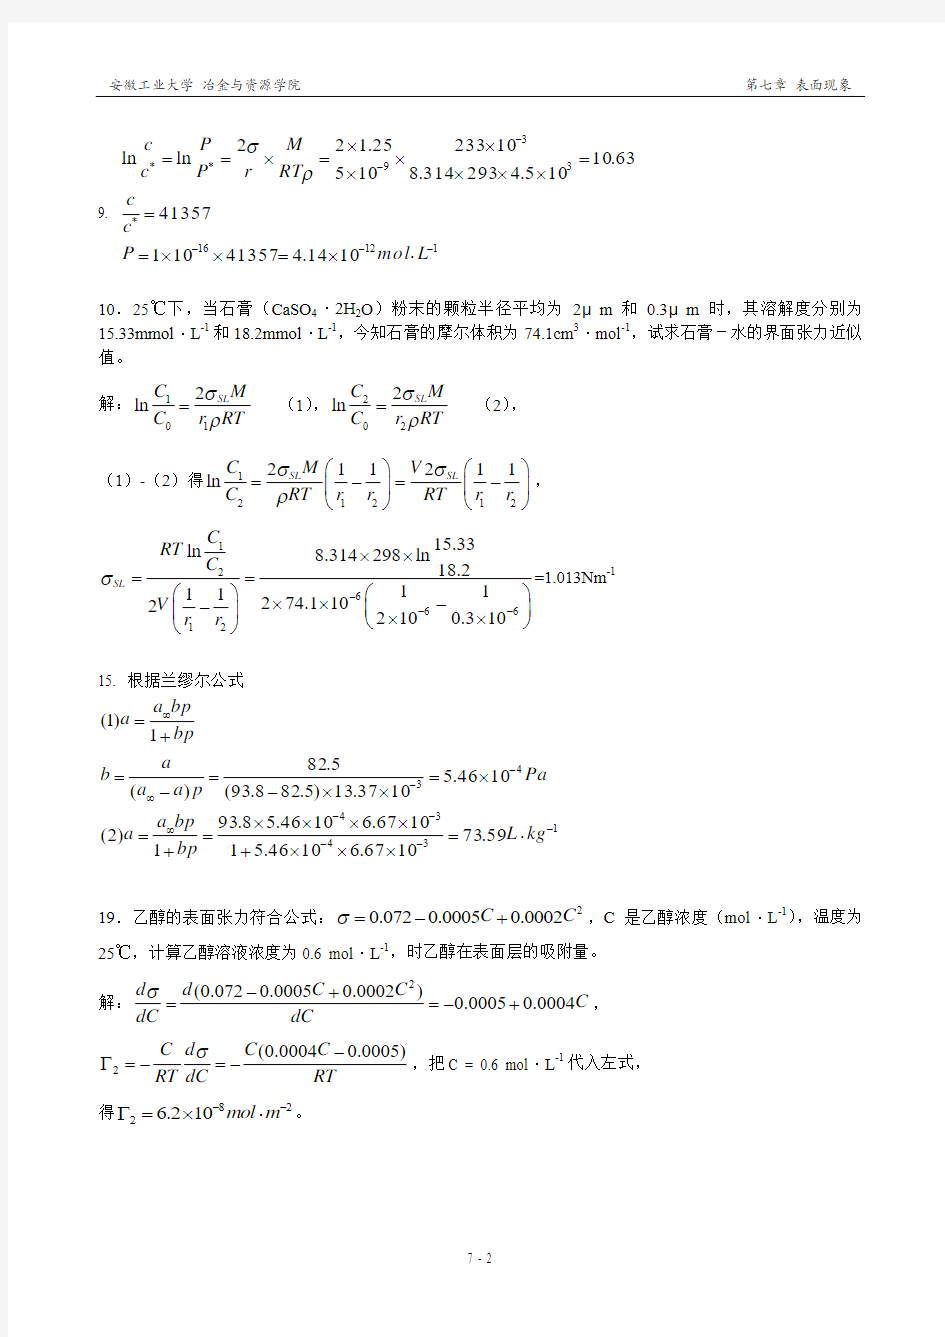 王淑兰 物理化学(第三版)【第七章】表面现象与分散系统 习题解答